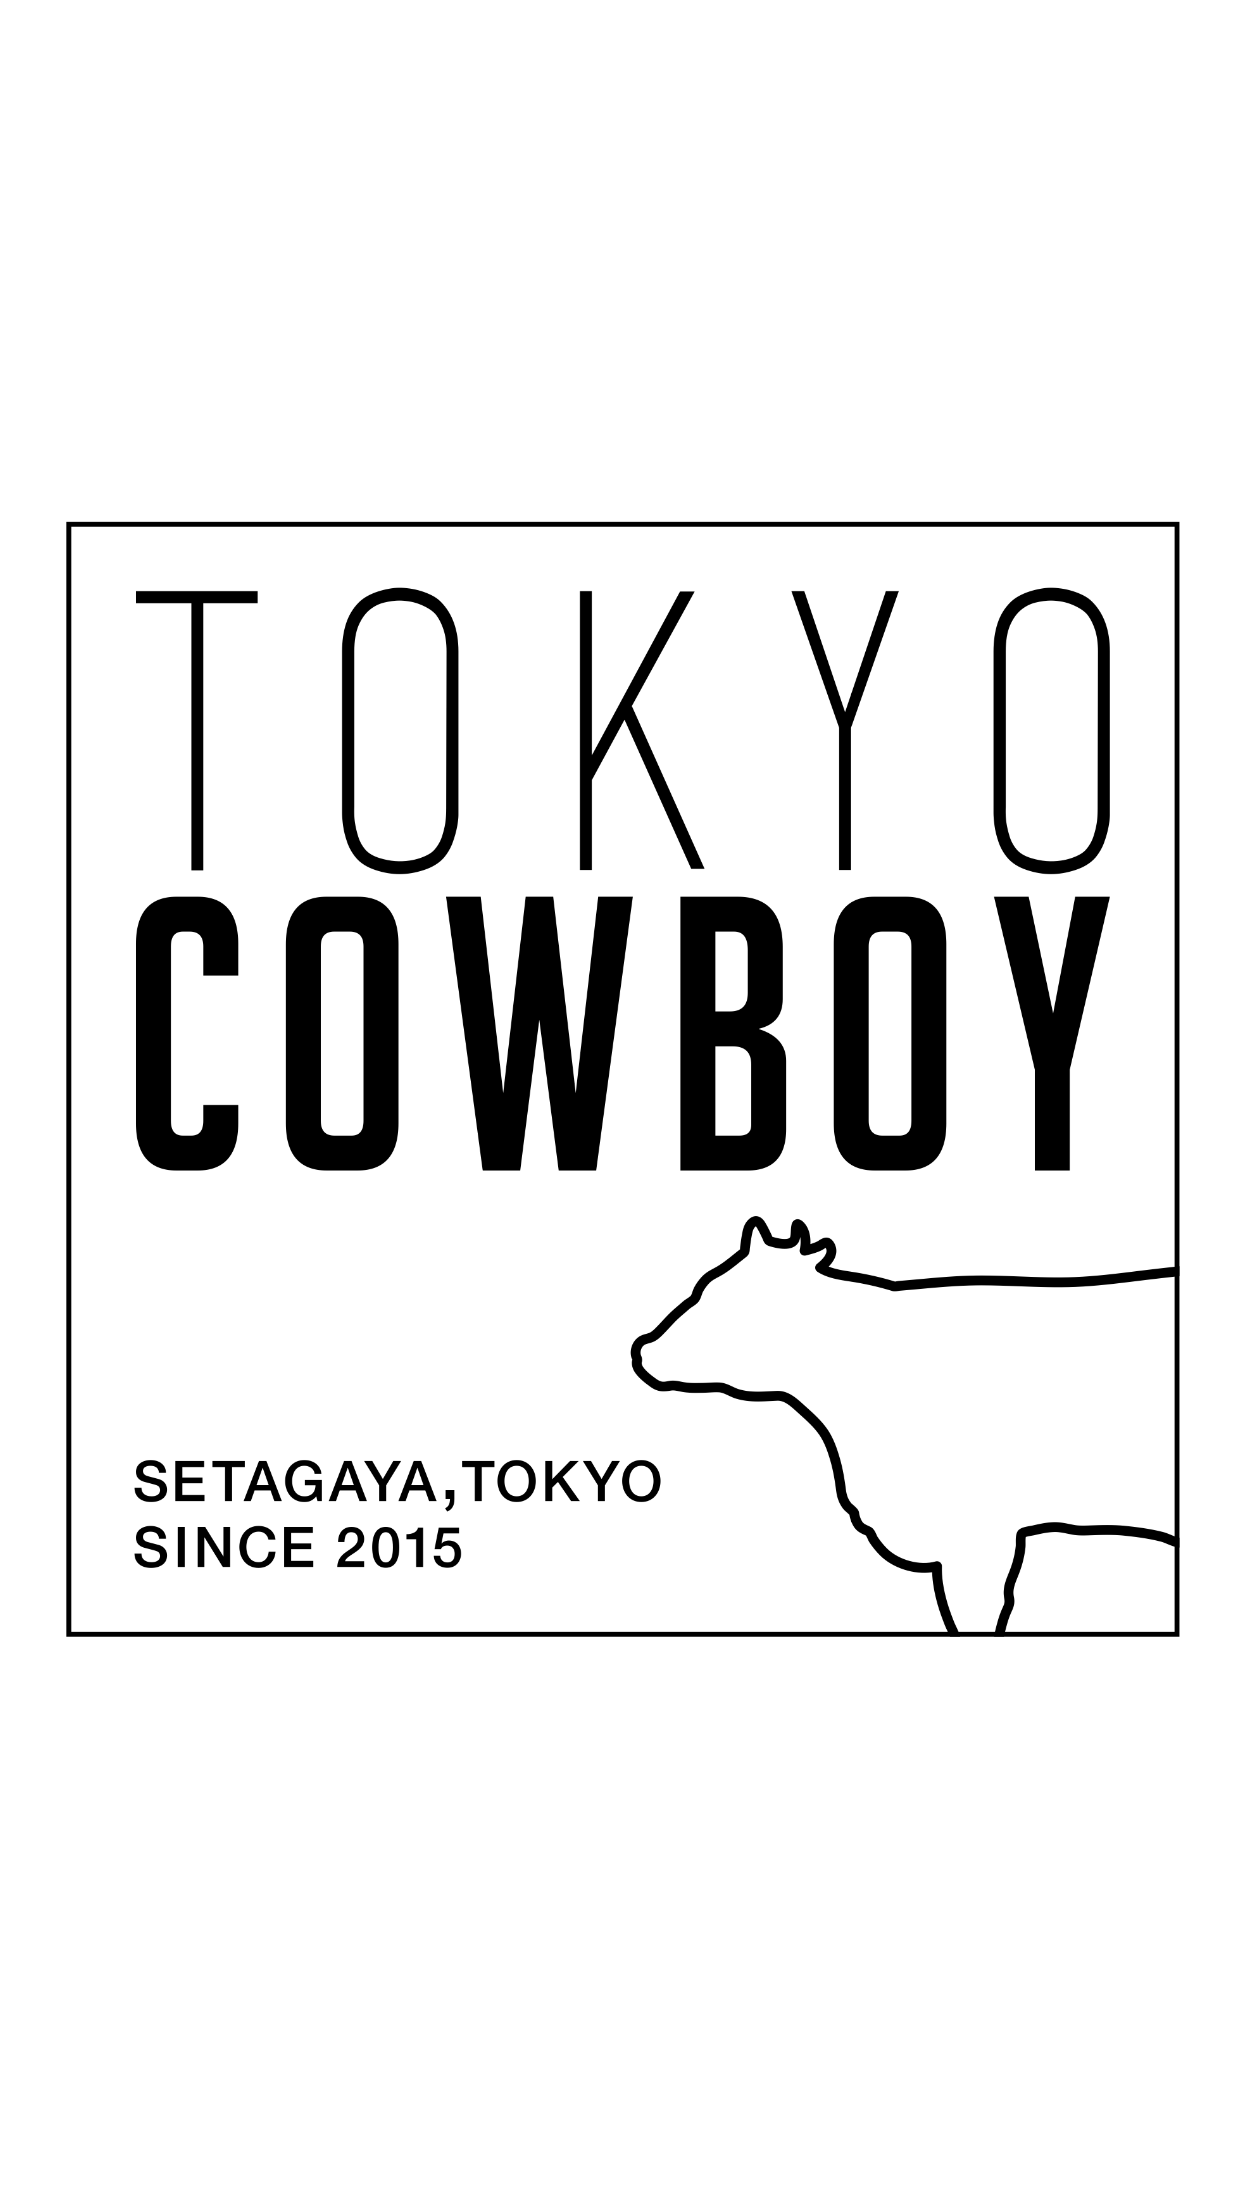 TOKYO COWBOY